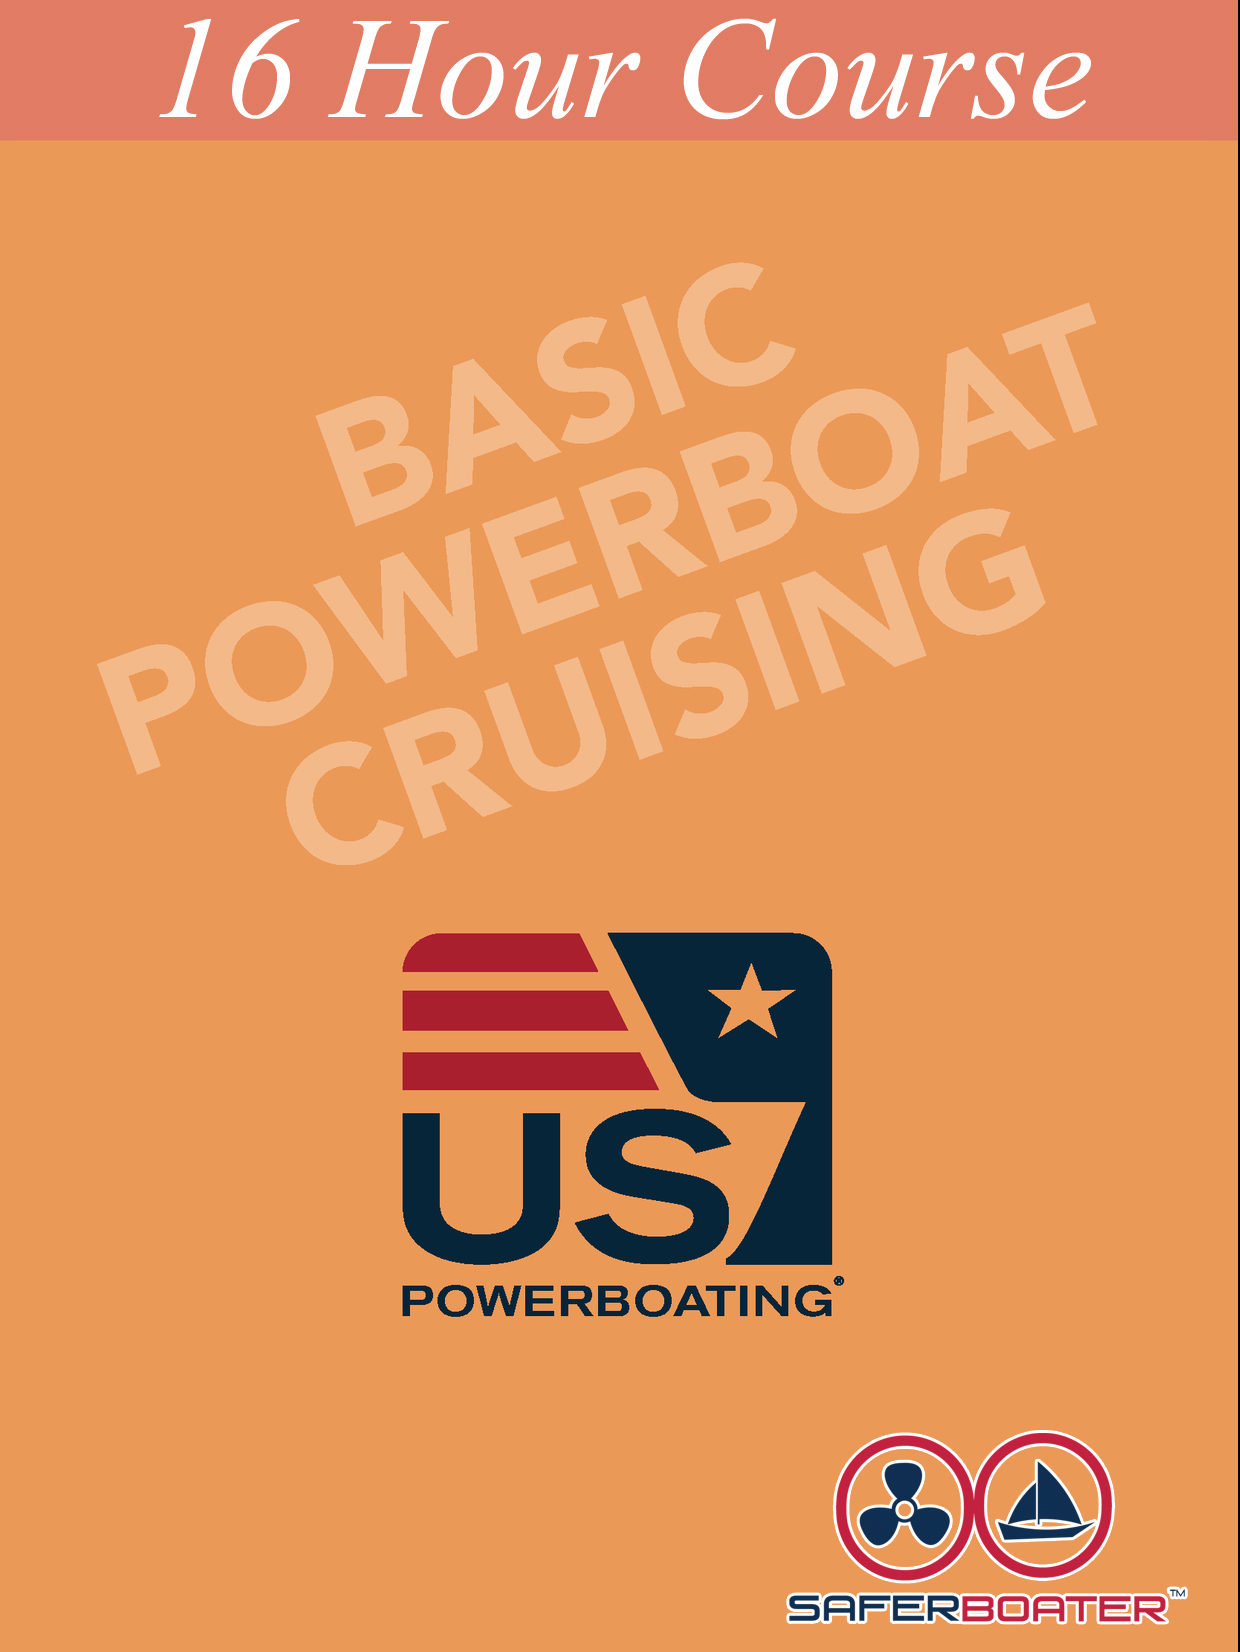 BasicPowerboatCruising